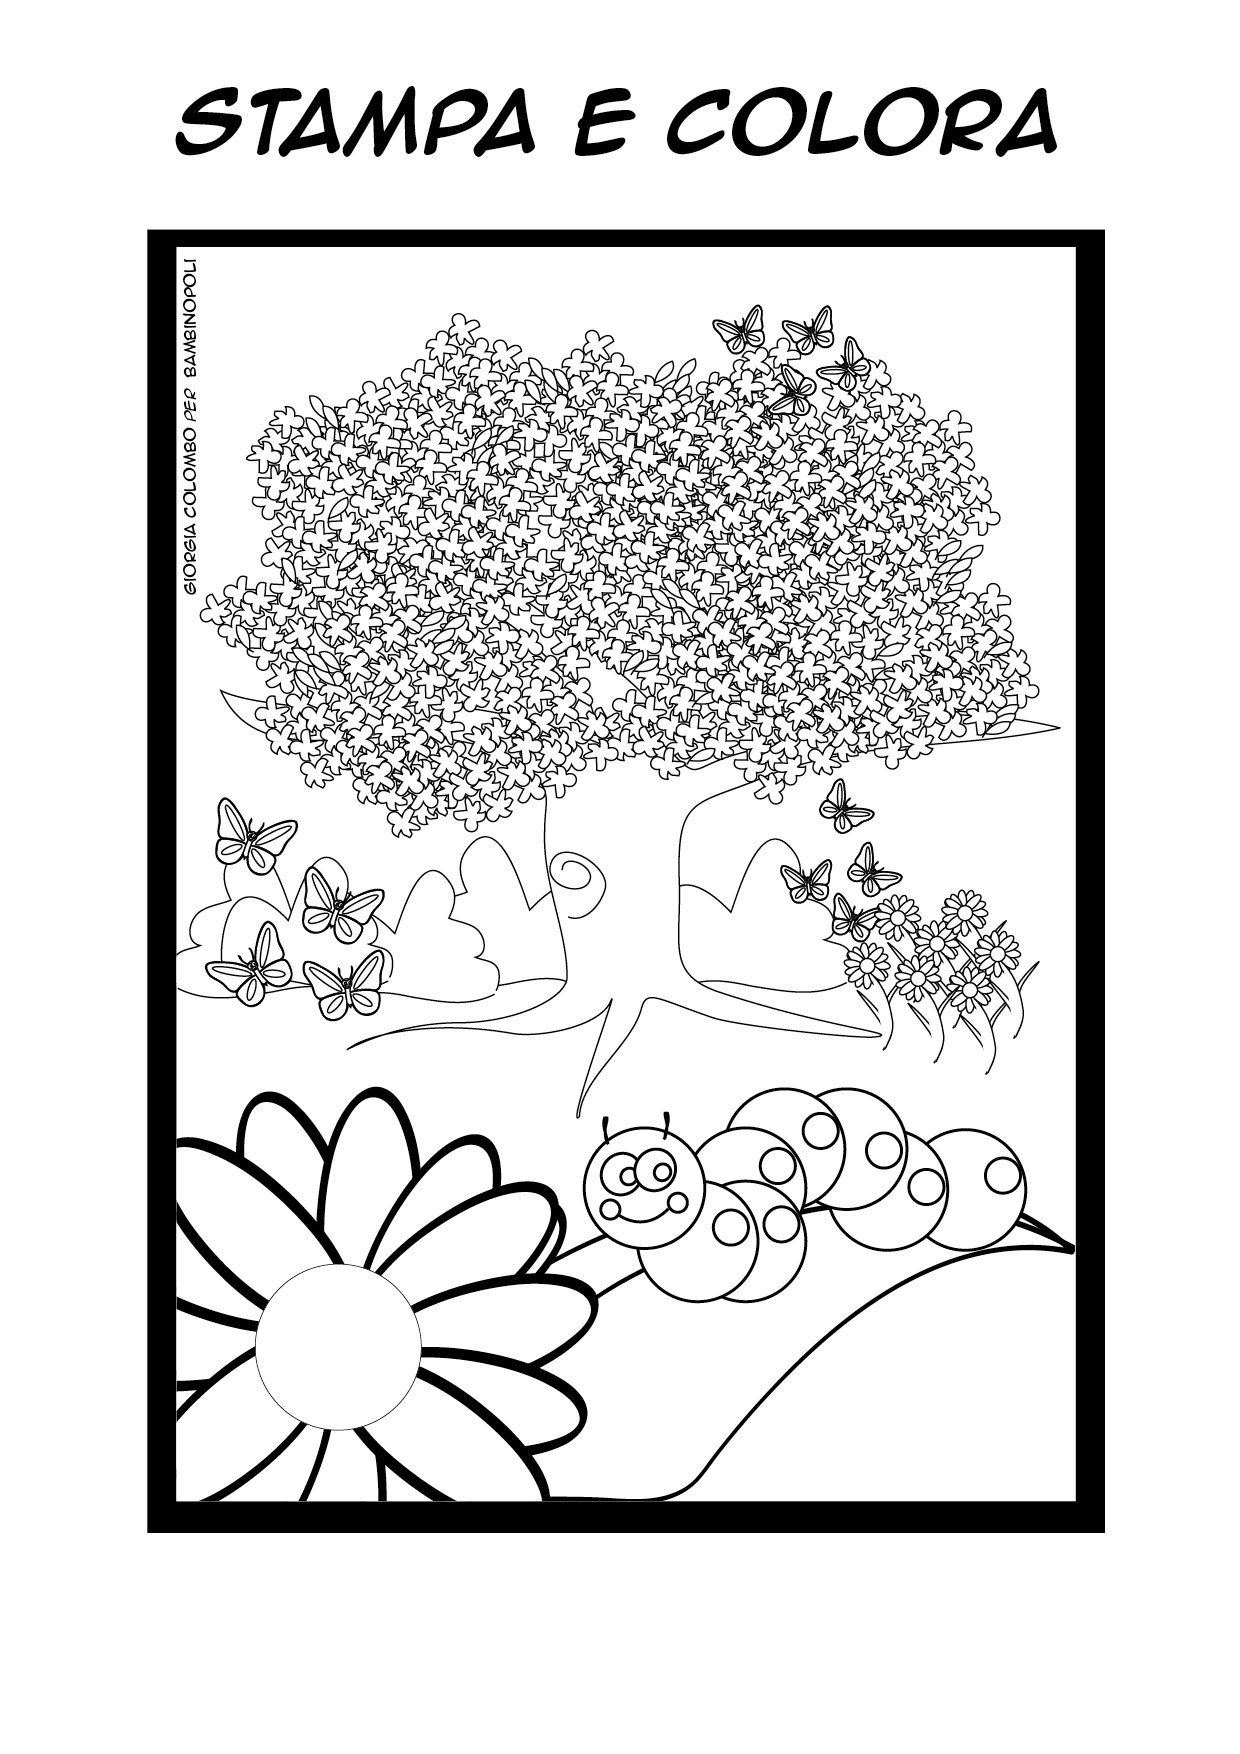 Clicca e stampa il disegno for Immagini sulla primavera da stampare e colorare